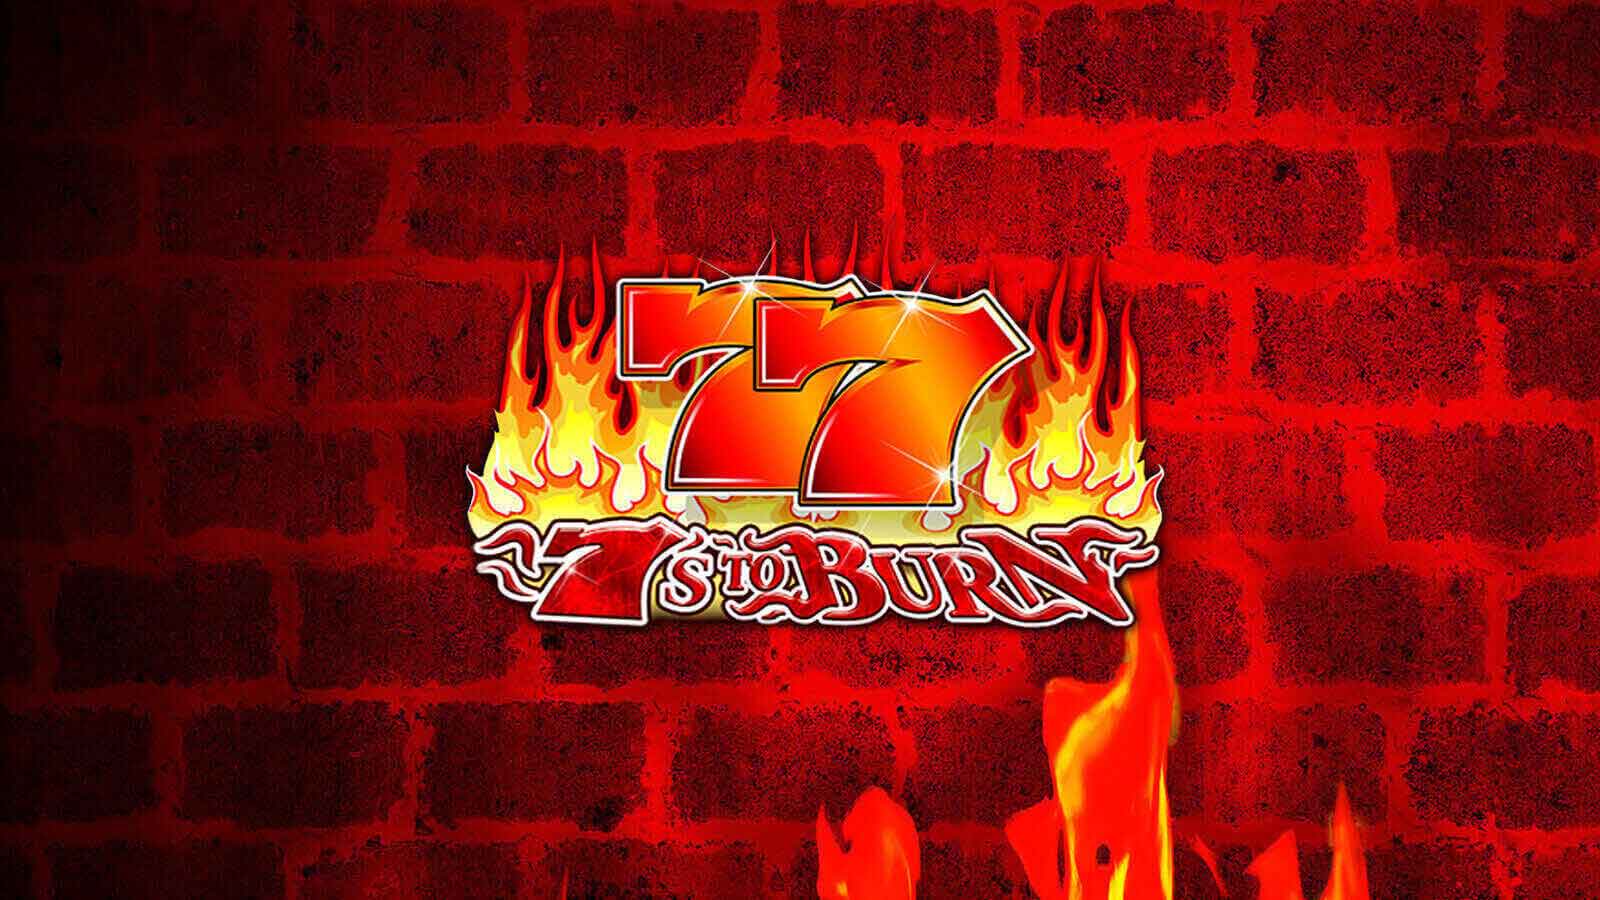 7 s to burn game casino forum